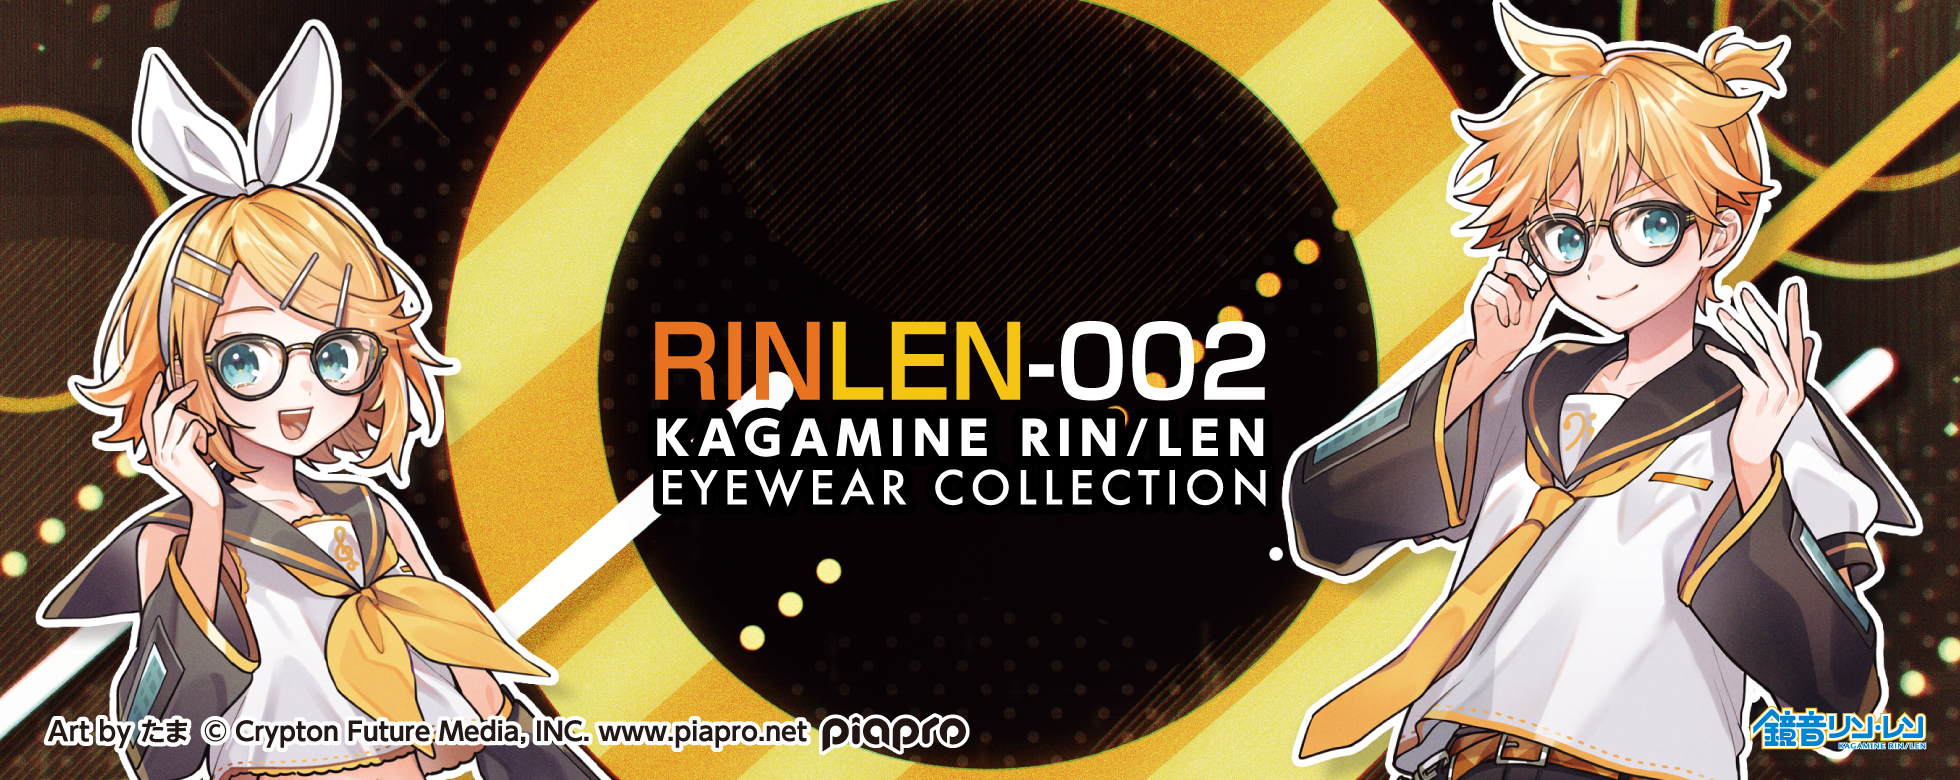 RINLEN-002